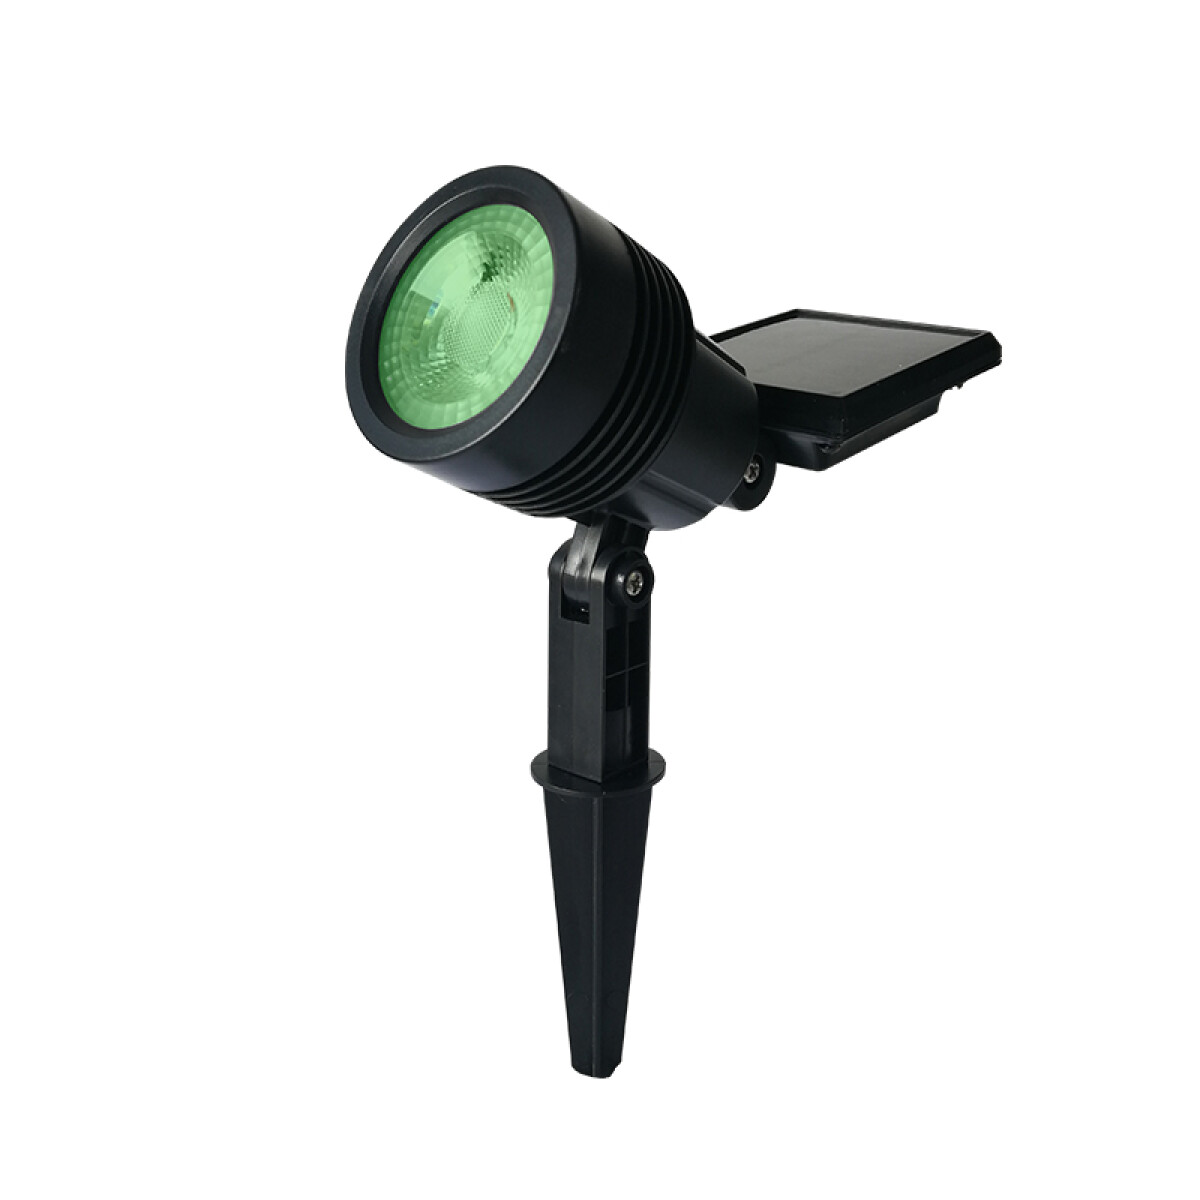 Pincho LED solar spot exterior 20Lm luz verde - IX3018X 